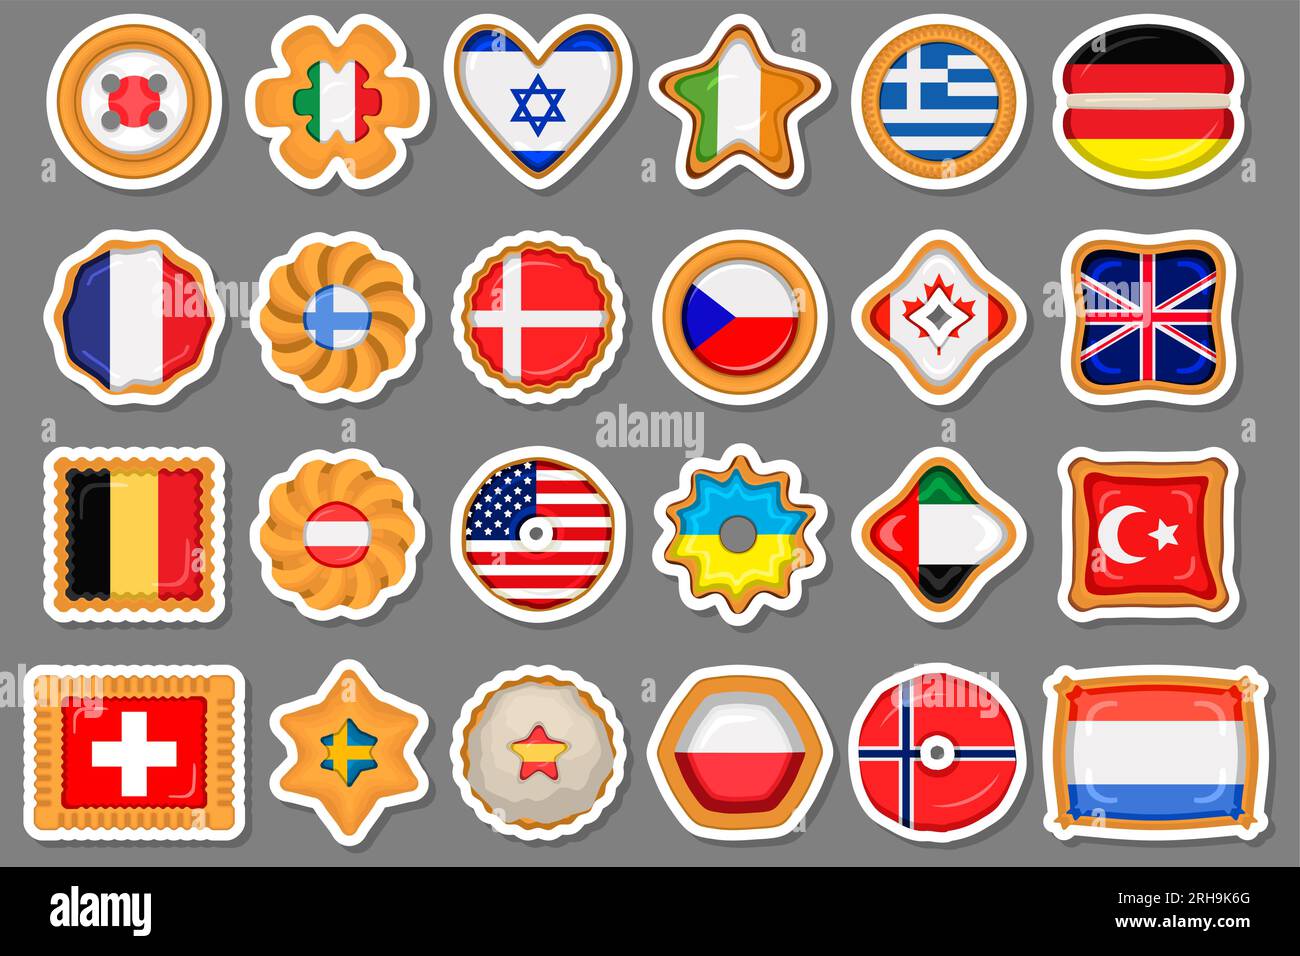 Alle nationalen Flaggen der Welt mit Namen - hohe Qualität vektor Flagge  auf grauem Hintergrund Stock-Vektorgrafik - Alamy